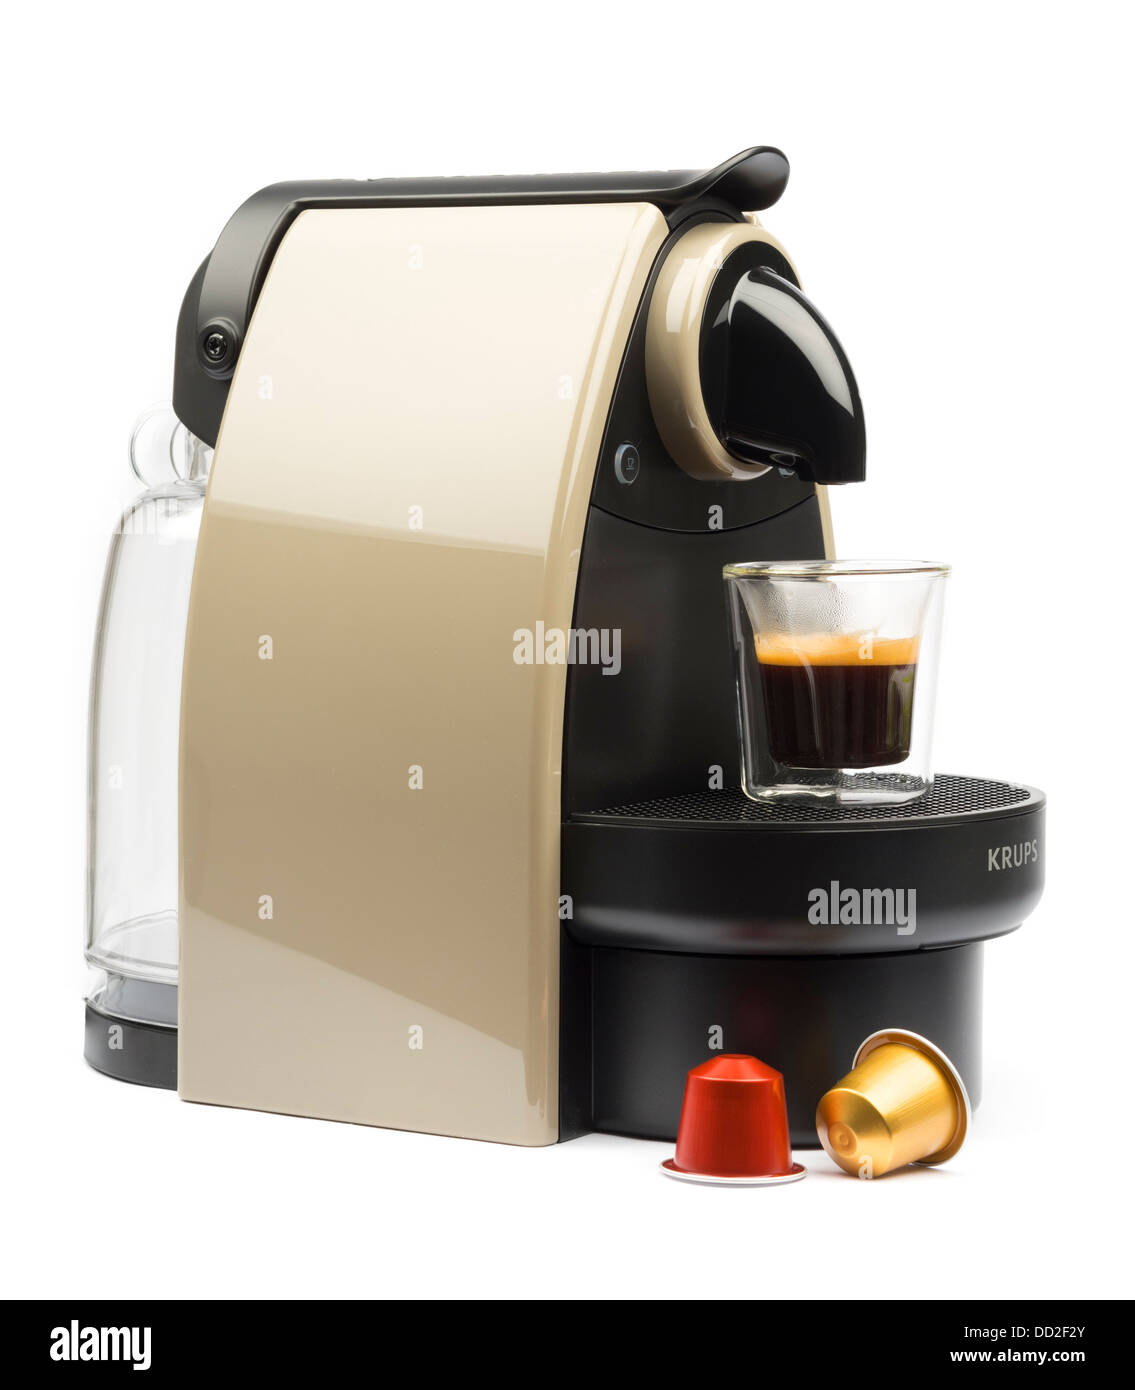 Krups coffee machine immagini e fotografie stock ad alta risoluzione - Alamy